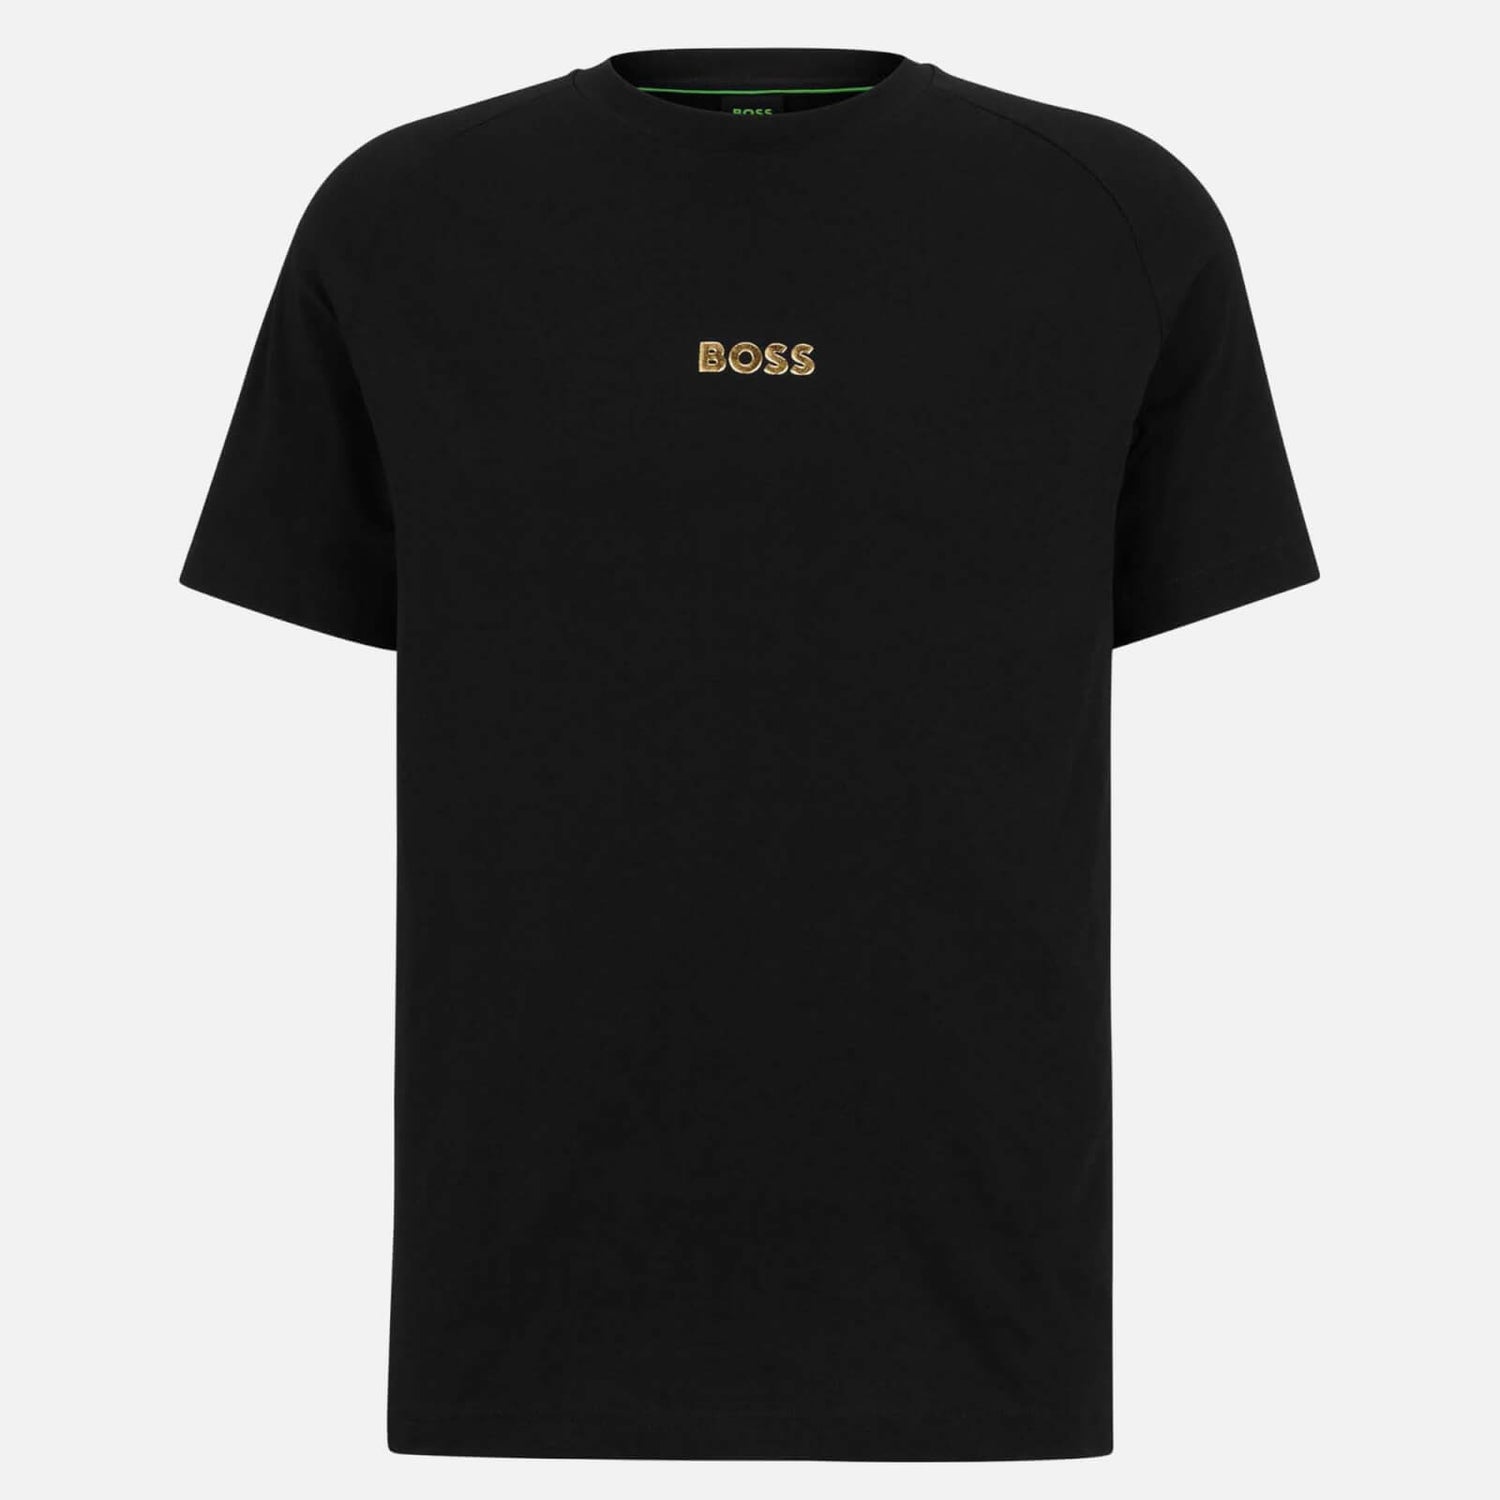 BOSS Green Tee 2 Stretch-Cotton Jersey T-Shirt - S